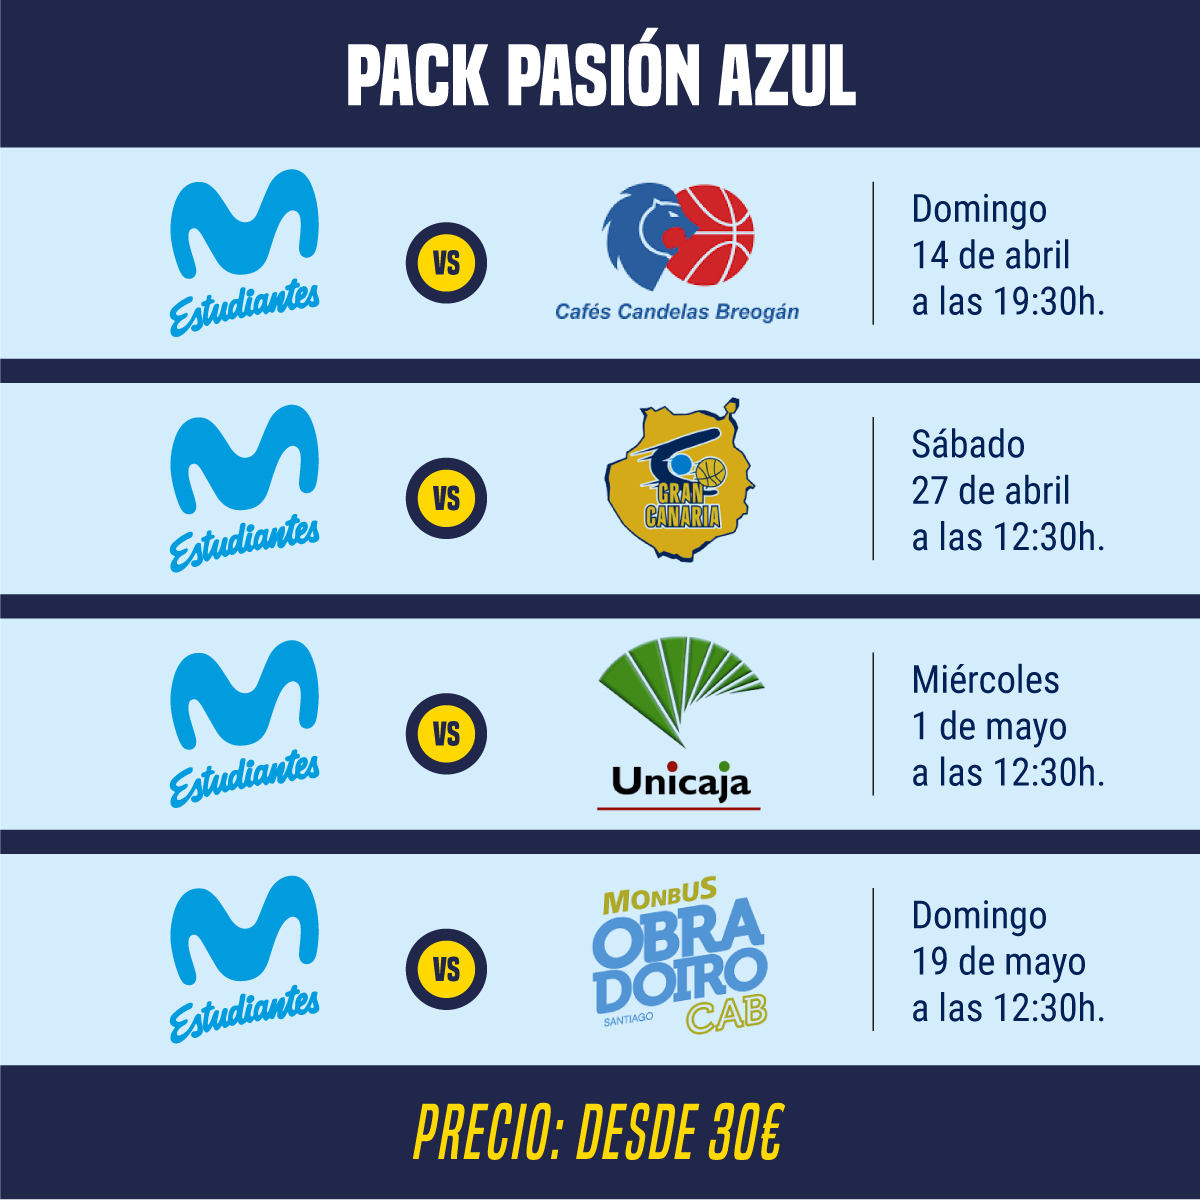 Pack Pasión Azul: cuatro finales desde 15€